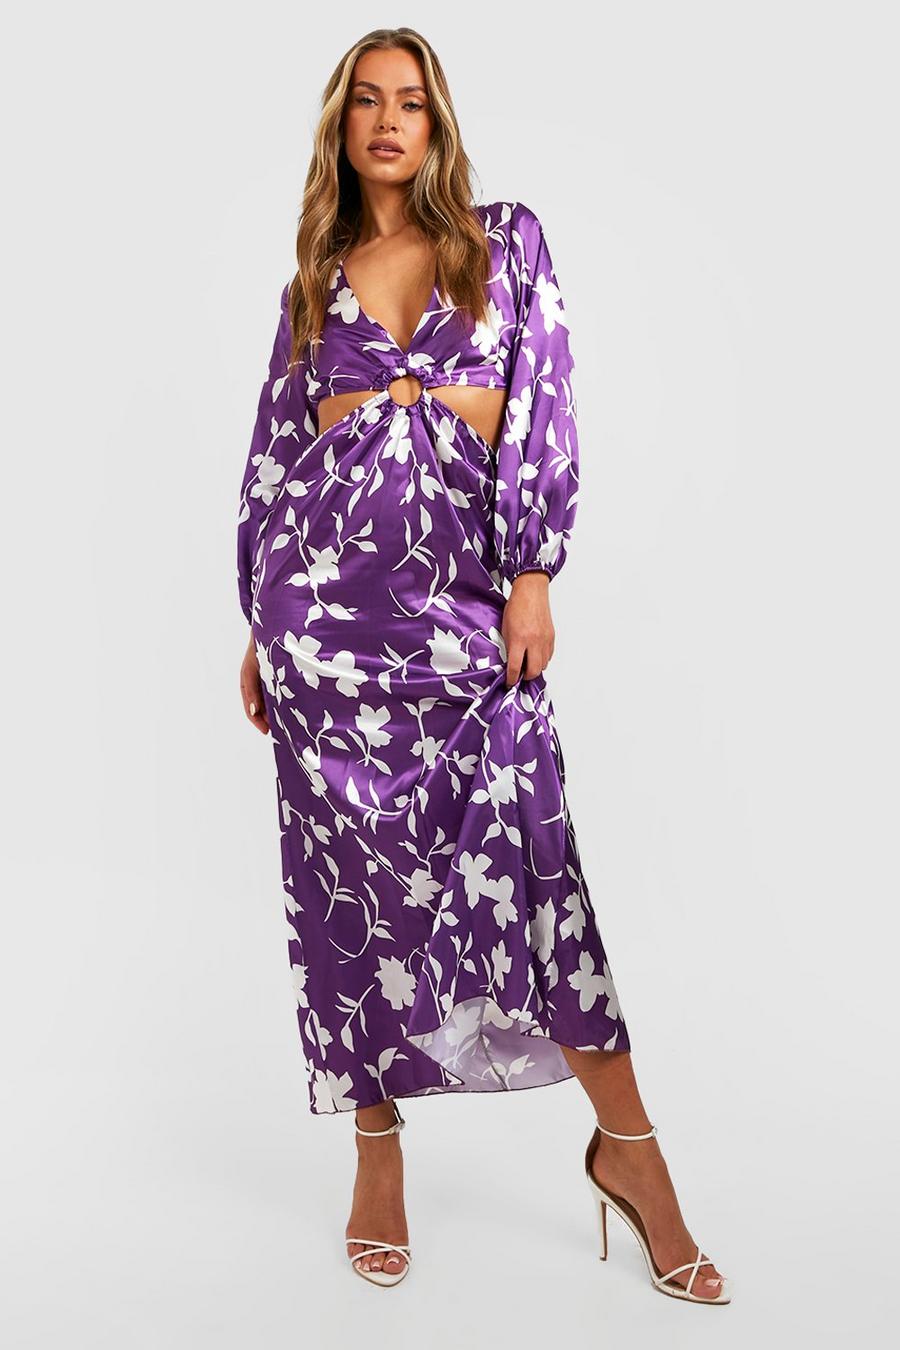 Jewel purple Floral Cut Out Maxi Dress